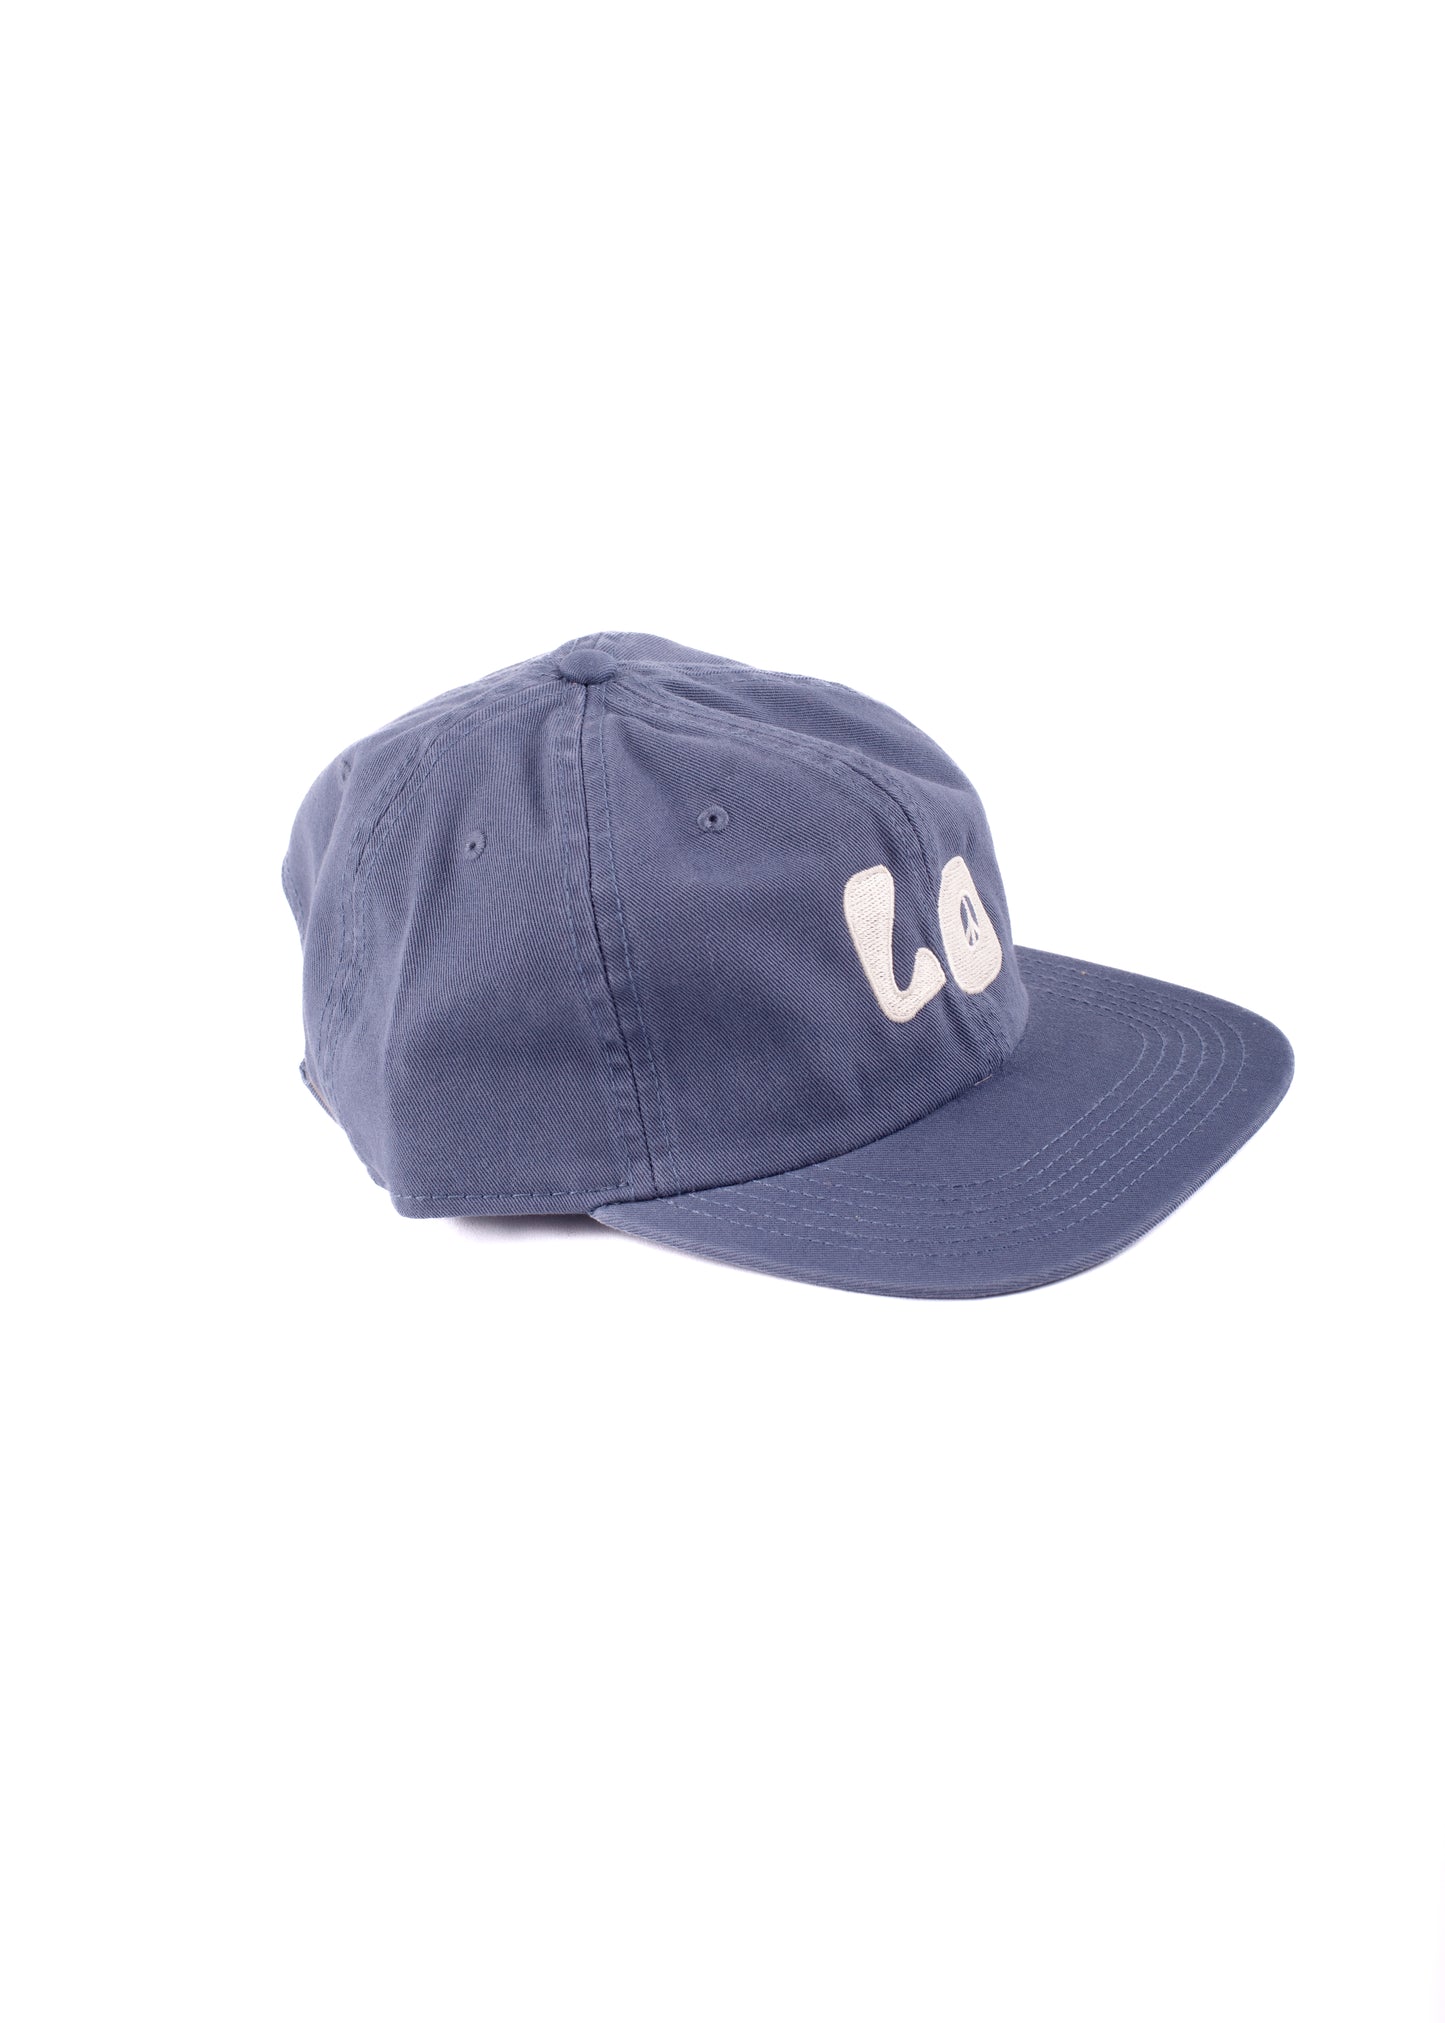 L/O x Cody Hudson Icon Hat